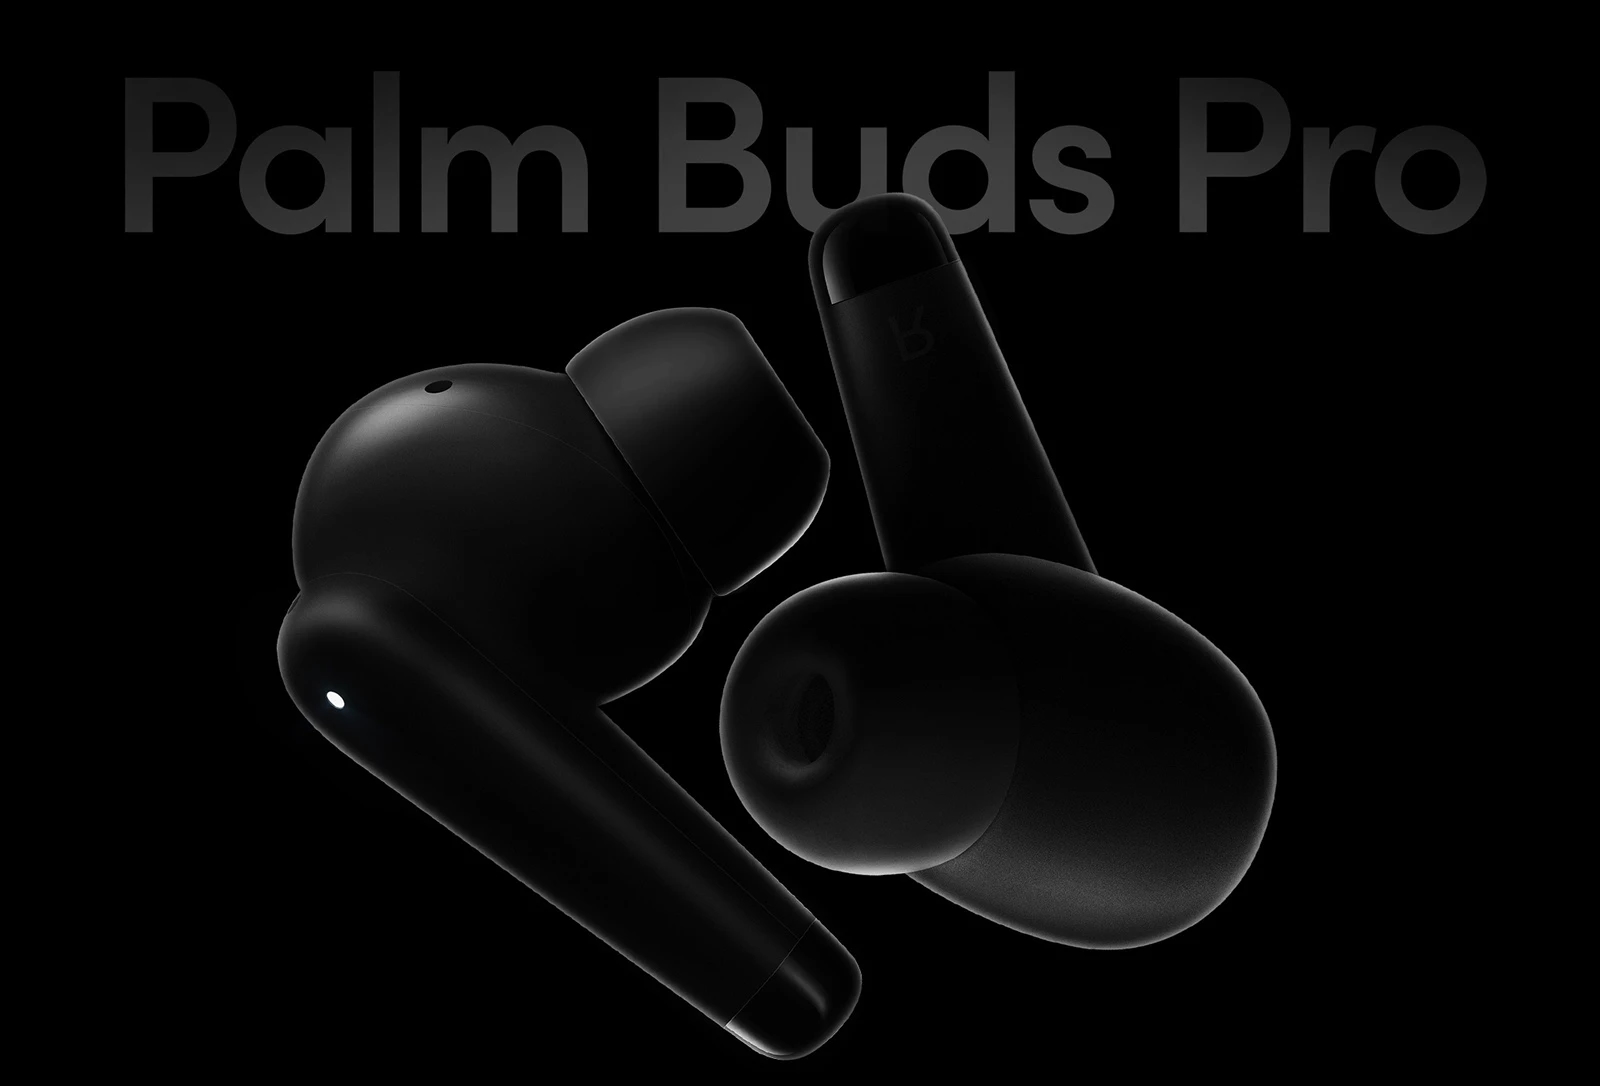 Palm Buds Pro: słuchawki TWS próżni z aktywną redukcją szumów i do 24 godzin pracy na baterii za 99 dolarów